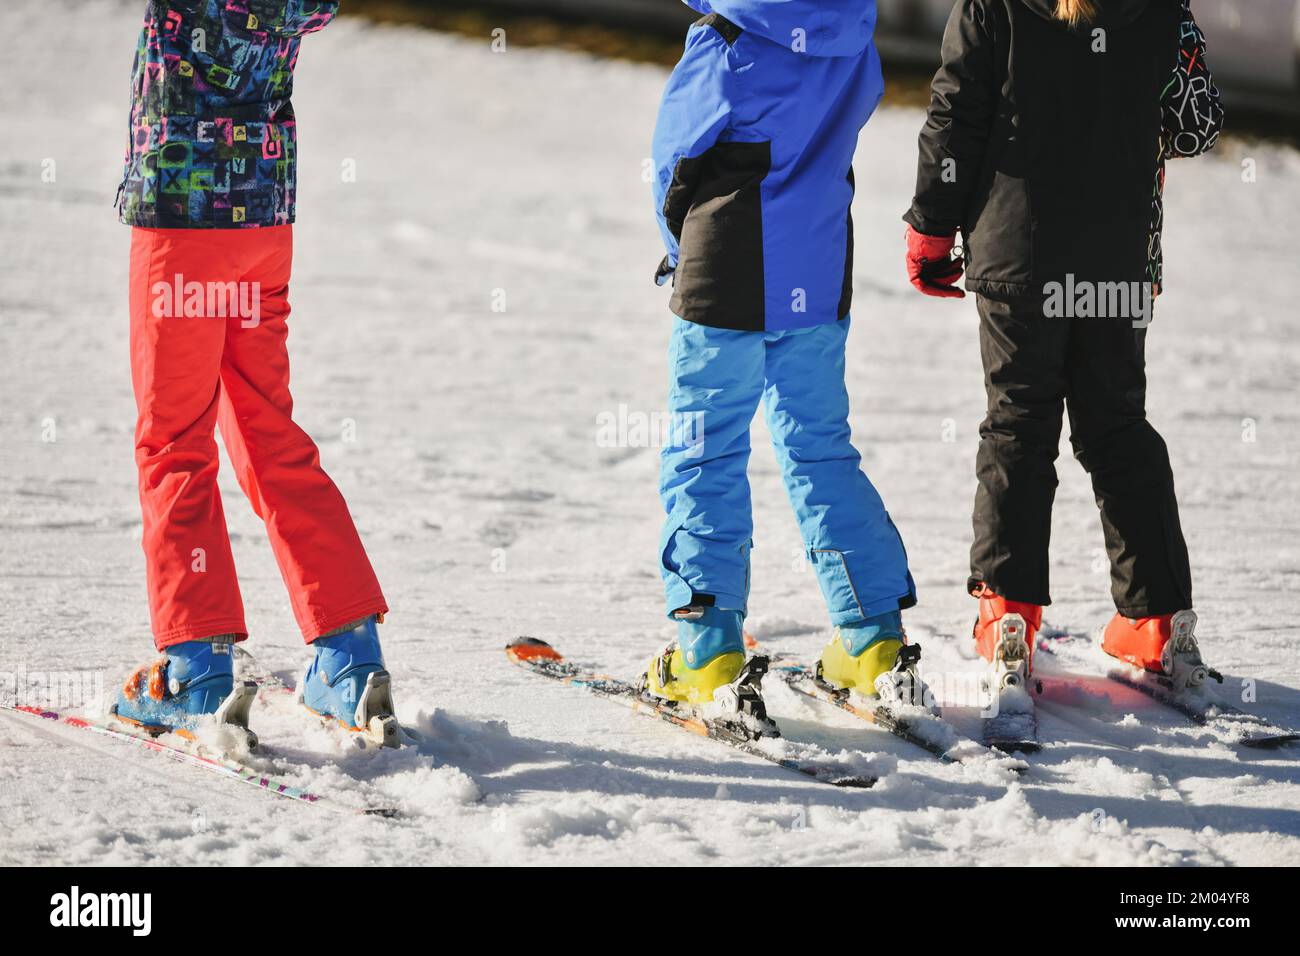 Kinder in Skianzügen fahren Ski auf Schnee Stockfoto